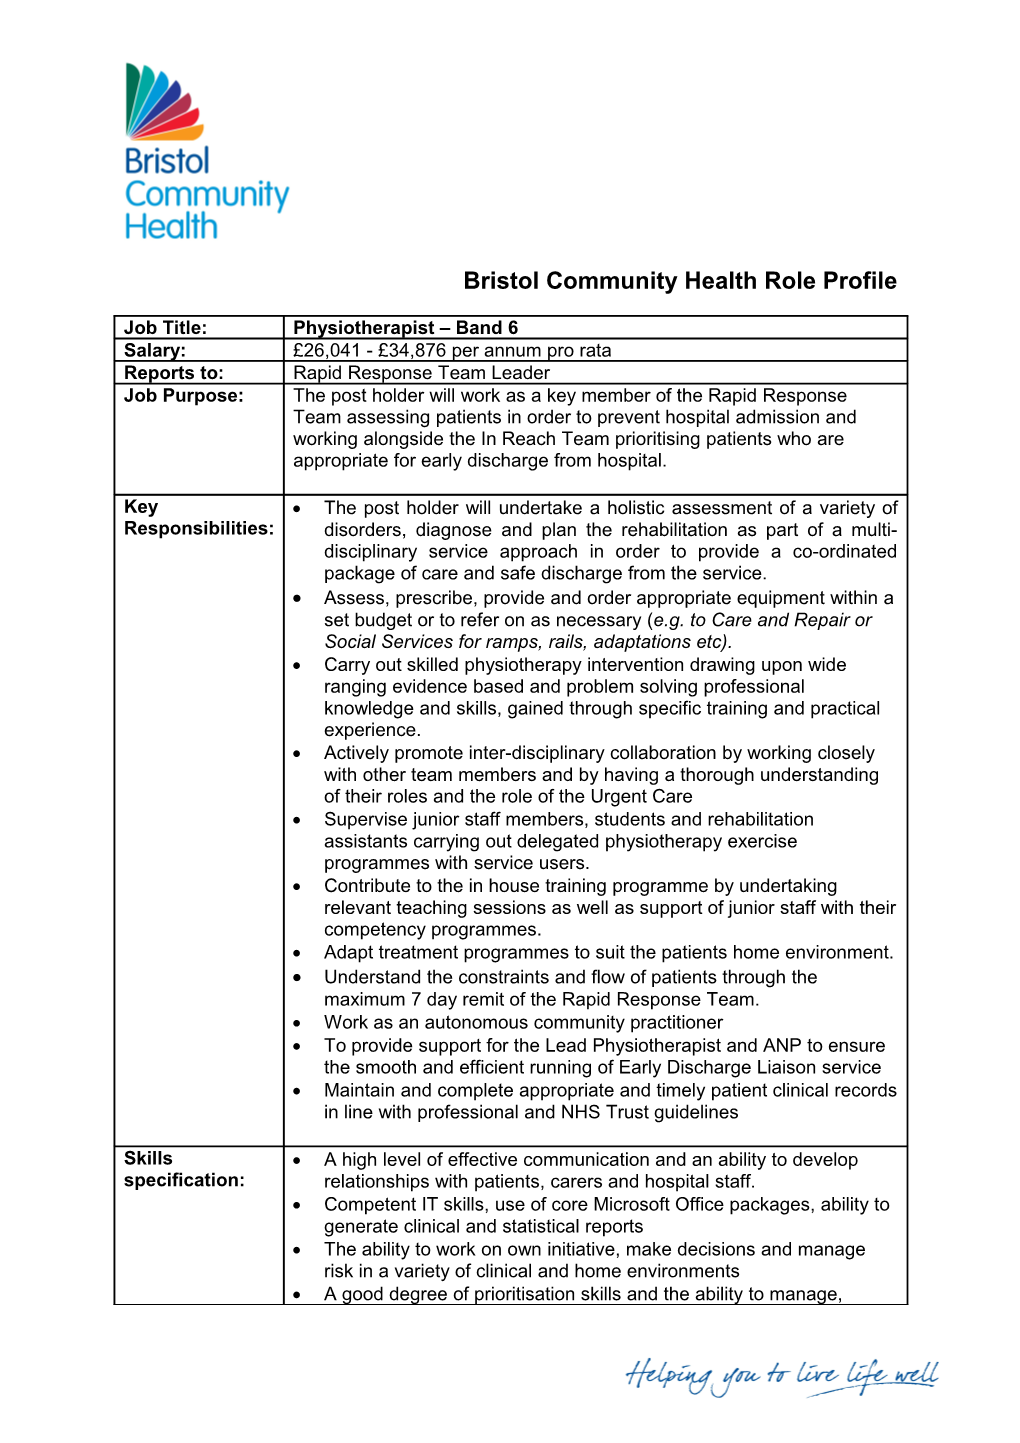 Bristol Community Health Role Profile